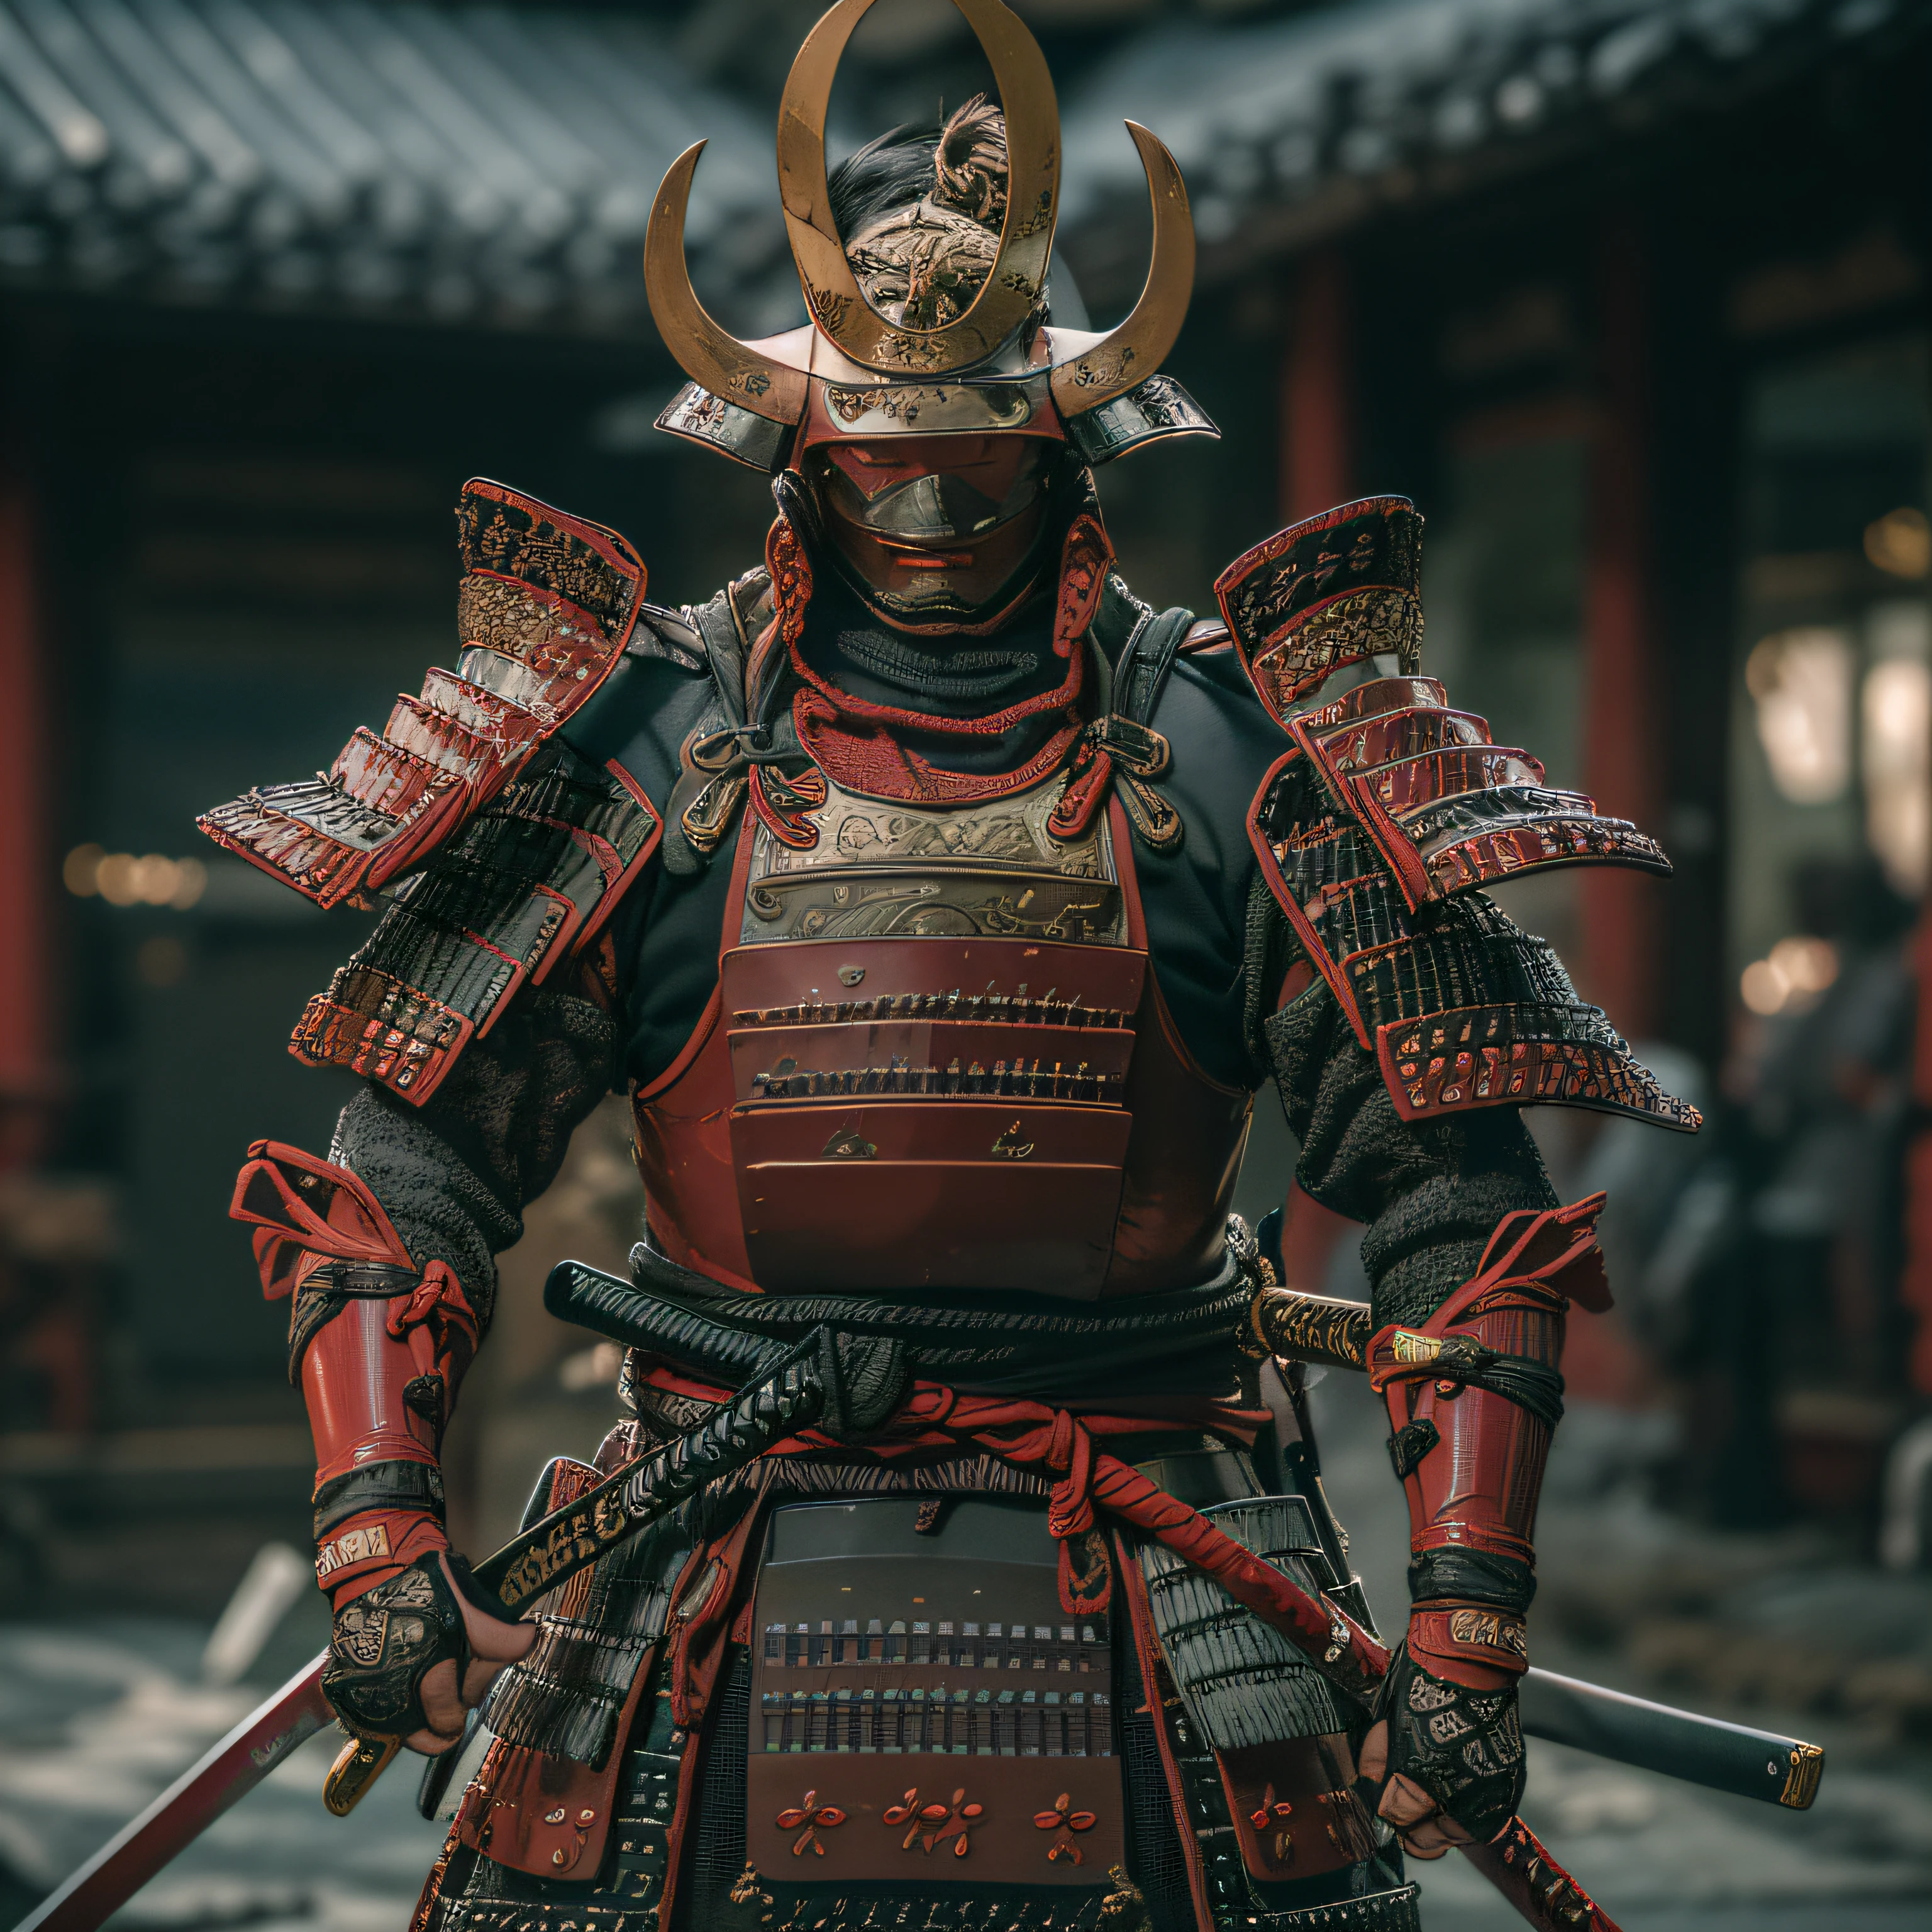 (chef-d&#39;œuvre, Ultra haute résolution:1.4), (photo d&#39;un samouraï daimyo Sengoku marquant un katana avec une cuirasse et un casque:1.3), katana à deux mains, visage très détaillé, (Armure et casque de samouraï du patrimoine japonais), (grande stature et corps musclé:1.4), (Appareil photo Sony Alpha 1, réputé pour capturer le plus haut niveau de détail dans une photo:1.3), (le visage du samouraï avec une symétrie parfaite et des traits impeccables:1.2), (armure et casque noirs et rouges:1.3), (se tenir avec une présence imposante au milieu du champ de bataille:1.1), accent sur l&#39;armure du daimyo, cinématique, hyper détaillé, détails fous, Magnifiquement étalonné en couleurs, Moteur irréel, DOF, Super-résolution, Mégapixel, cinématique Lightning, anti crénelage, FKA, THAÏLANDAIS, RTX, SSAO, post-traitement, Post-production, Cartographie des tons, cgi, Effets visuels, Effets sonores, Incroyablement détaillé et complexe, Hyper maximaliste, hyper réaliste, volumétrique, photoréaliste, ultra photoréaliste, Ultra-détaillé, Détails complexes, 8k, Super détaillé, en couleur, volumétrique lightning, hdr, réaliste, Moteur irréel, 16k, netteté, rendu d&#39;octane